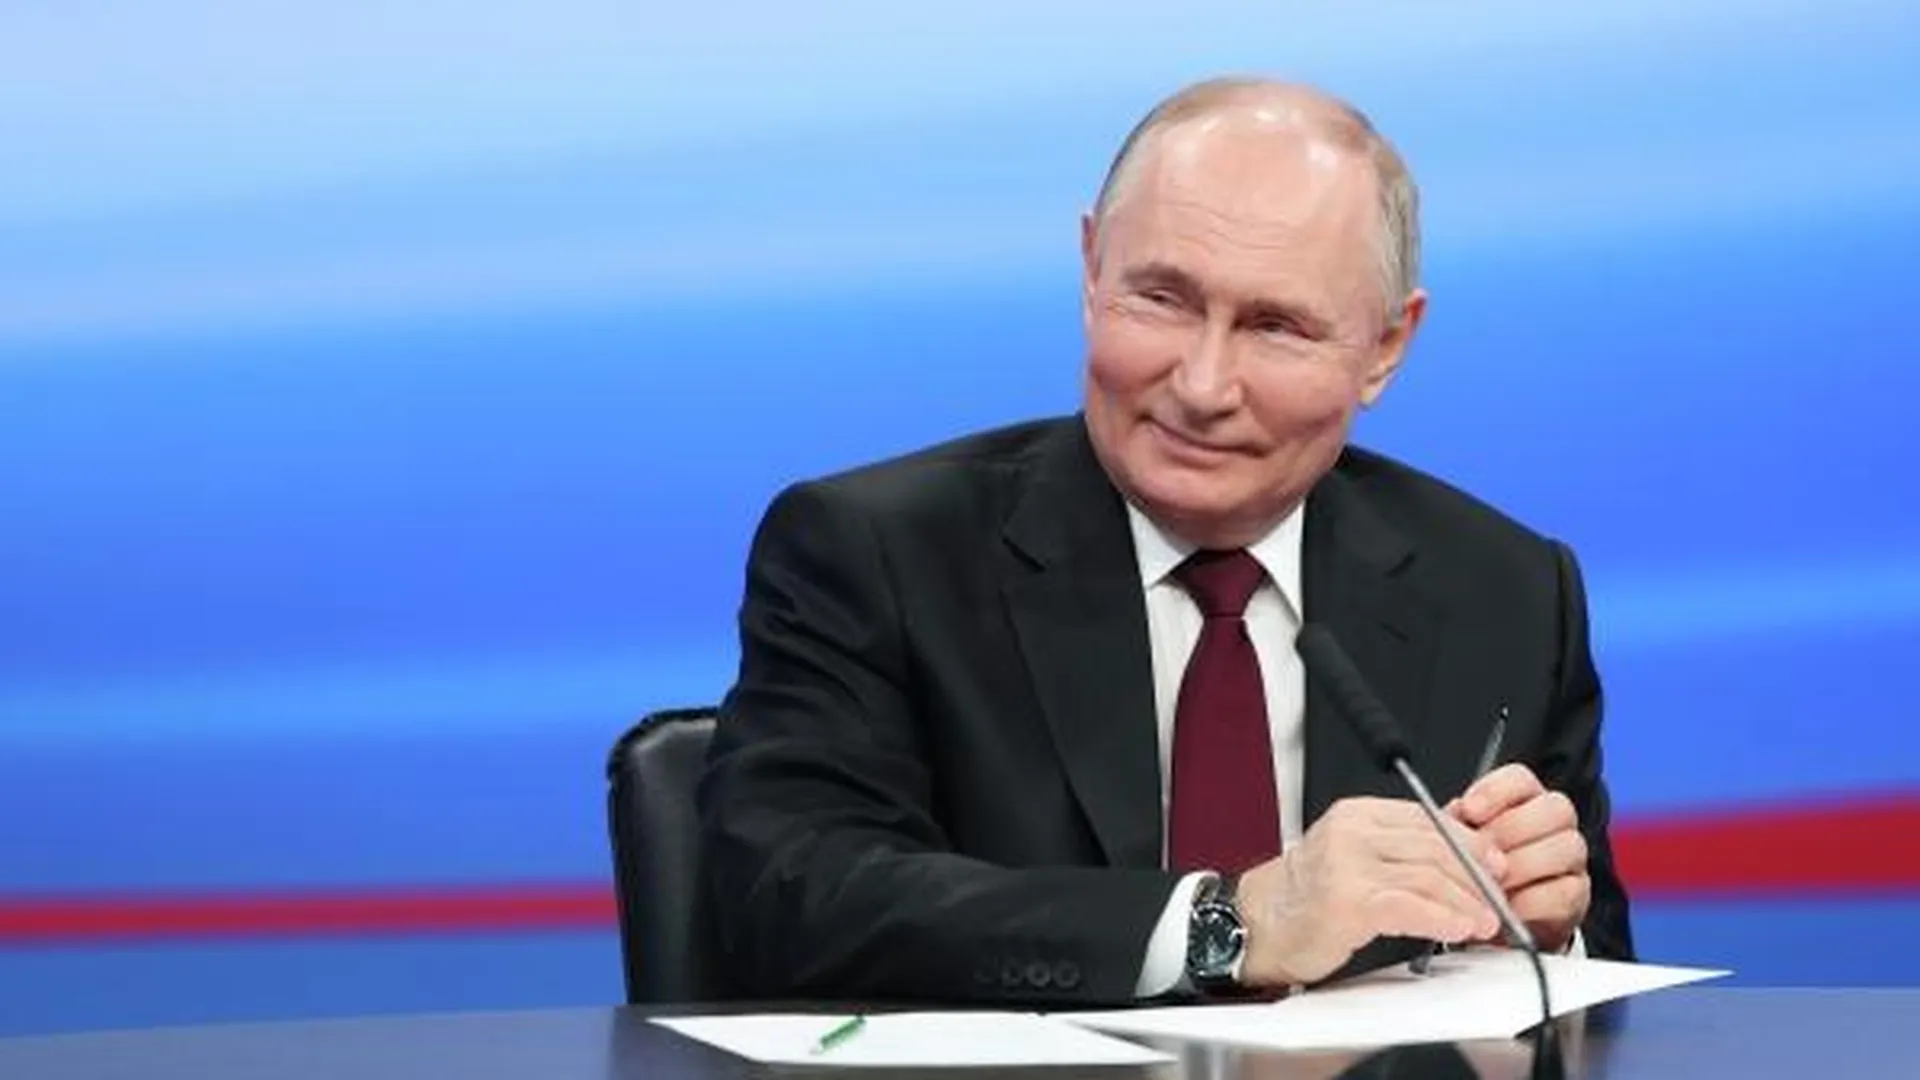 Безоговорочная победа. Путин оставил соперников далеко позади после подсчета 100% протоколов